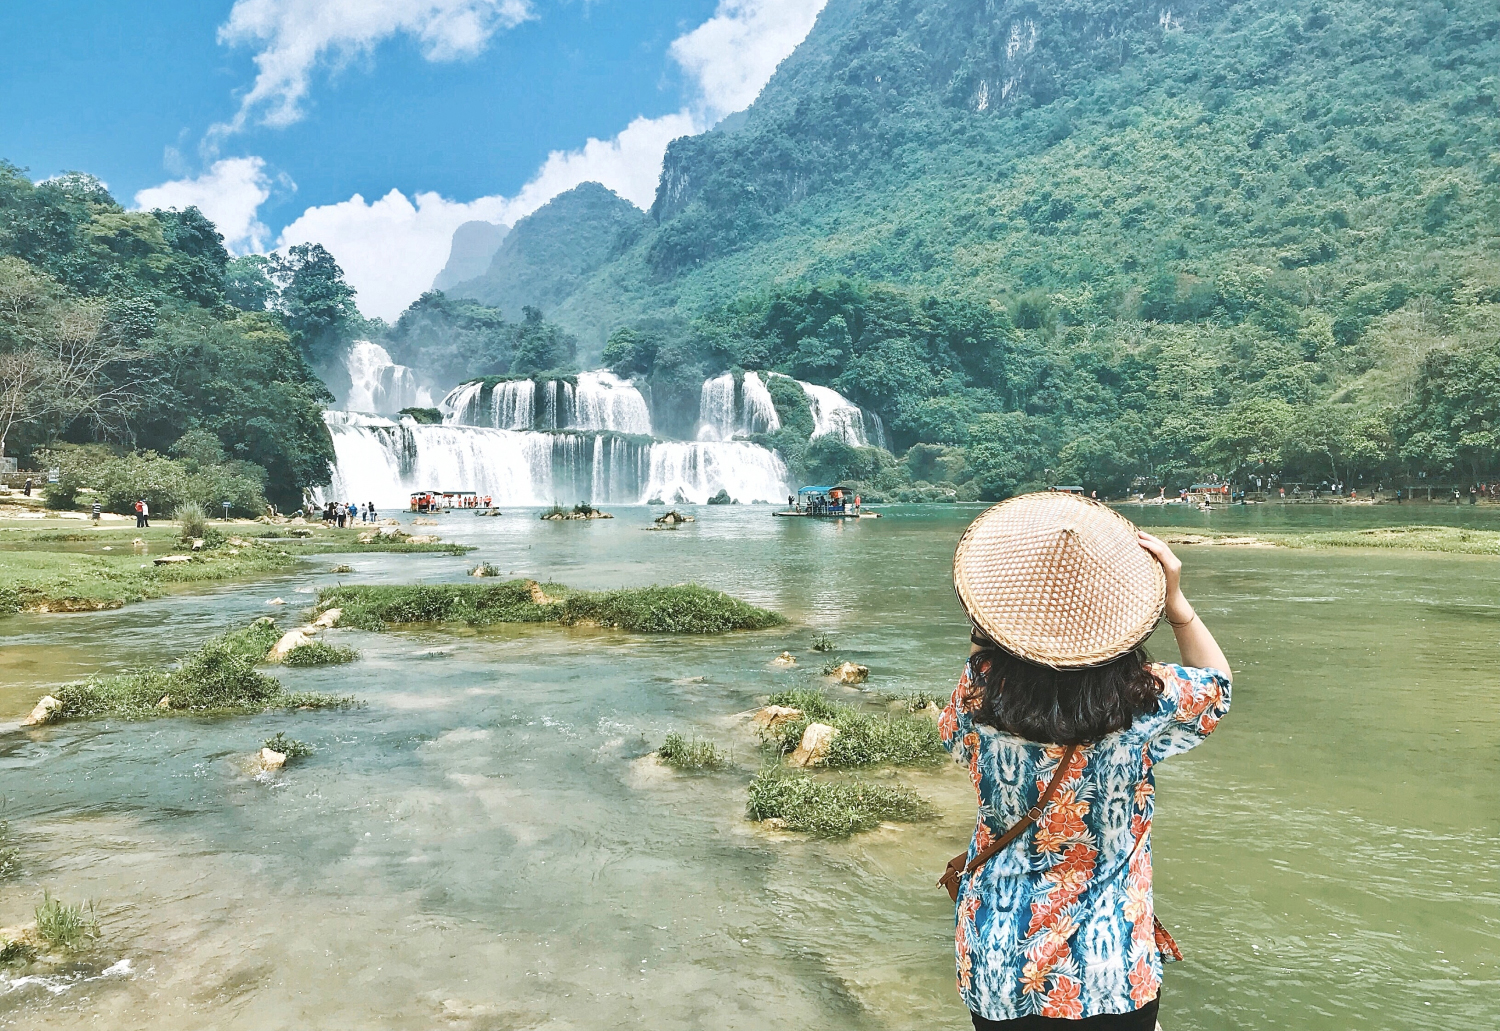 Du lịch Hồ Ba Bể - Cao Bằng Tết Dương Lịch 3 ngày giá tốt từ Hà Nội